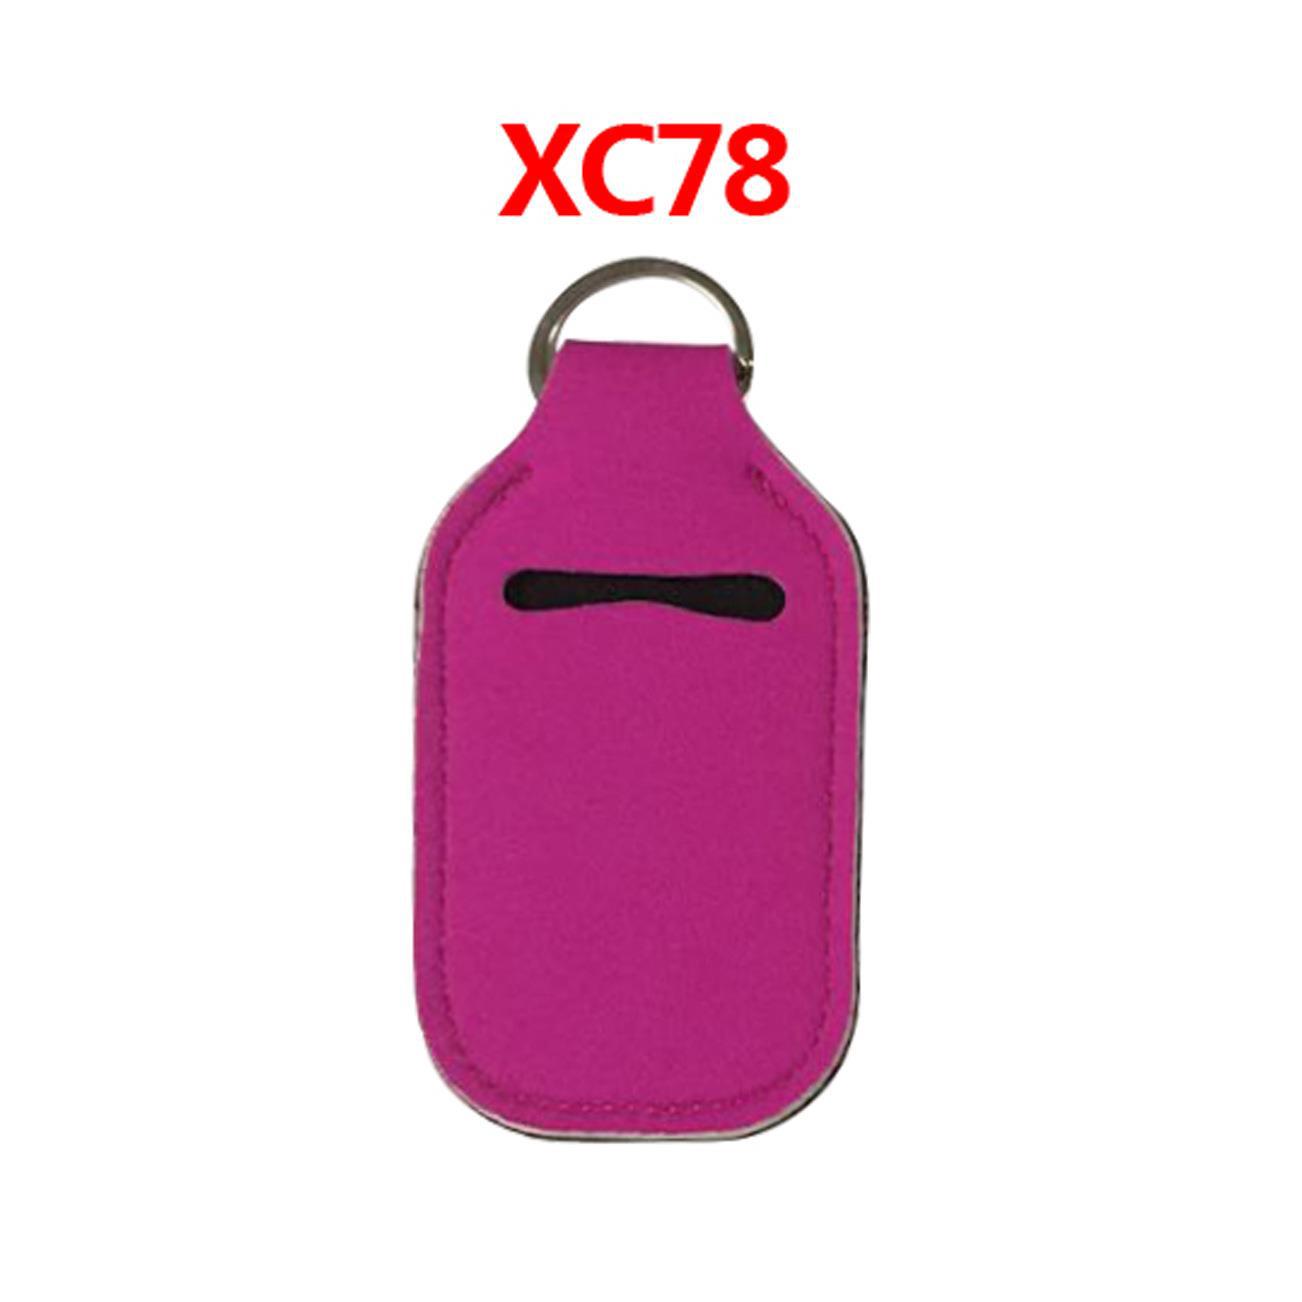 XC78